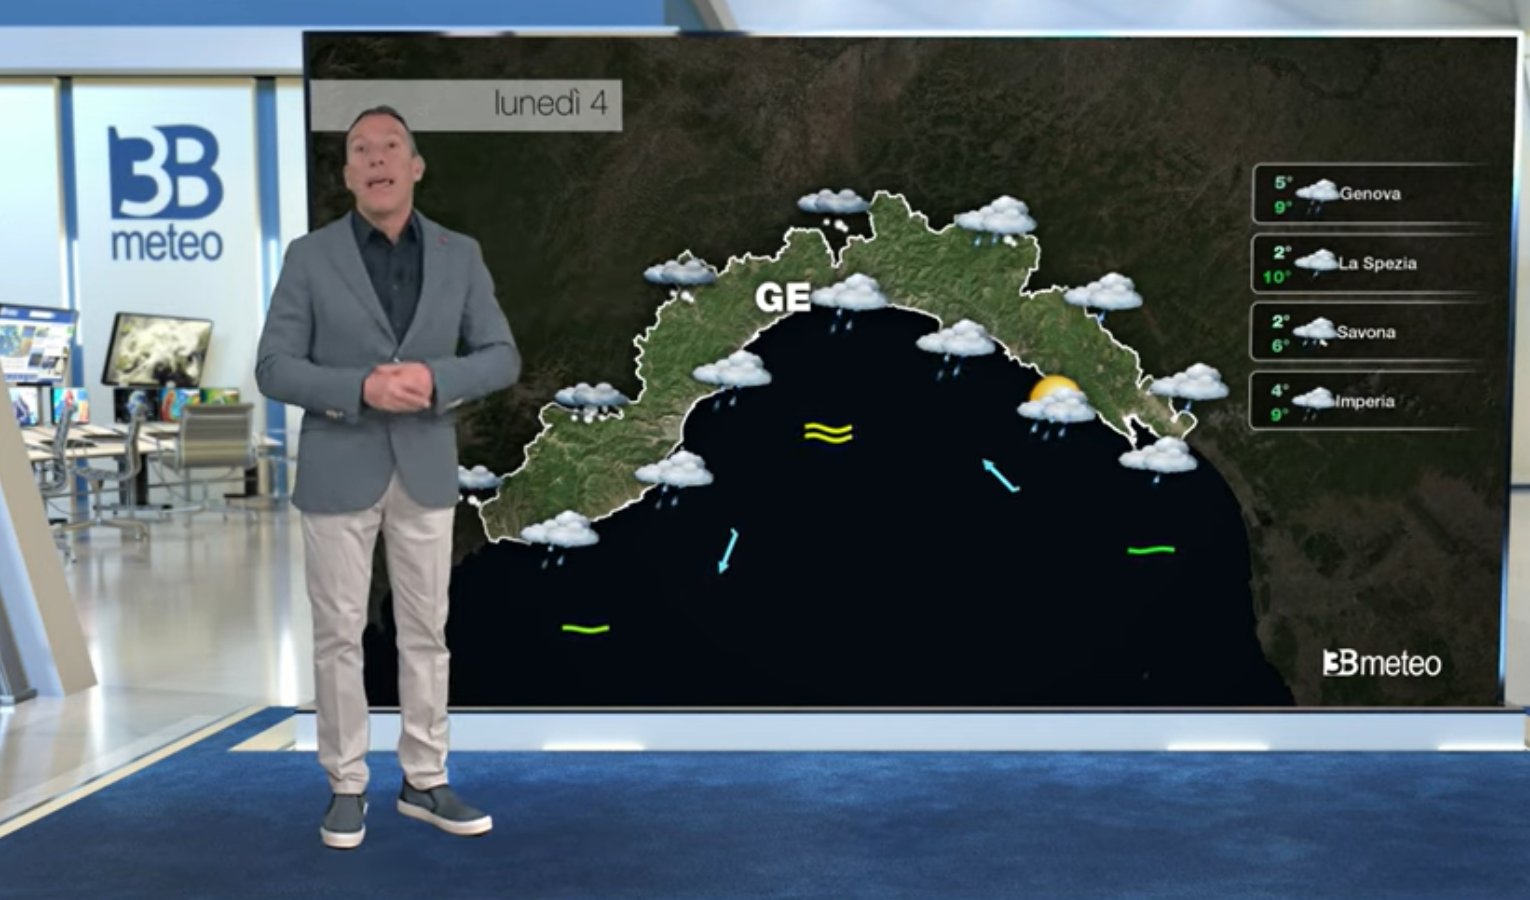 Meteo in Liguria, pioggia e calo delle temperature - le previsioni